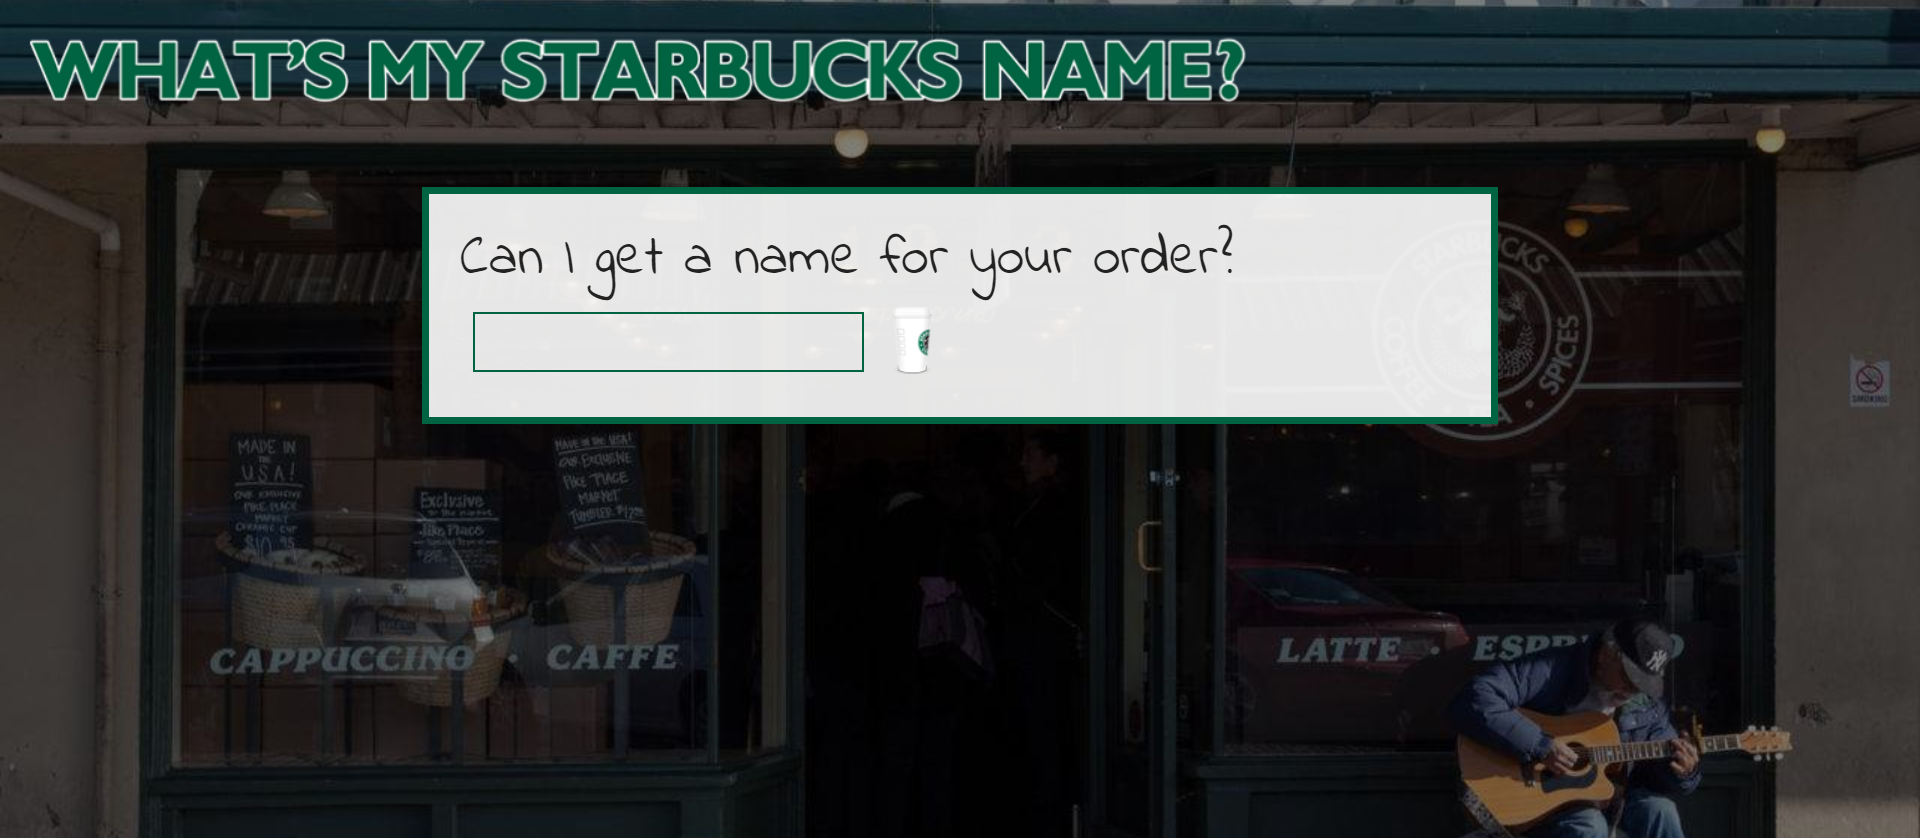 What's My Starbucks Name?